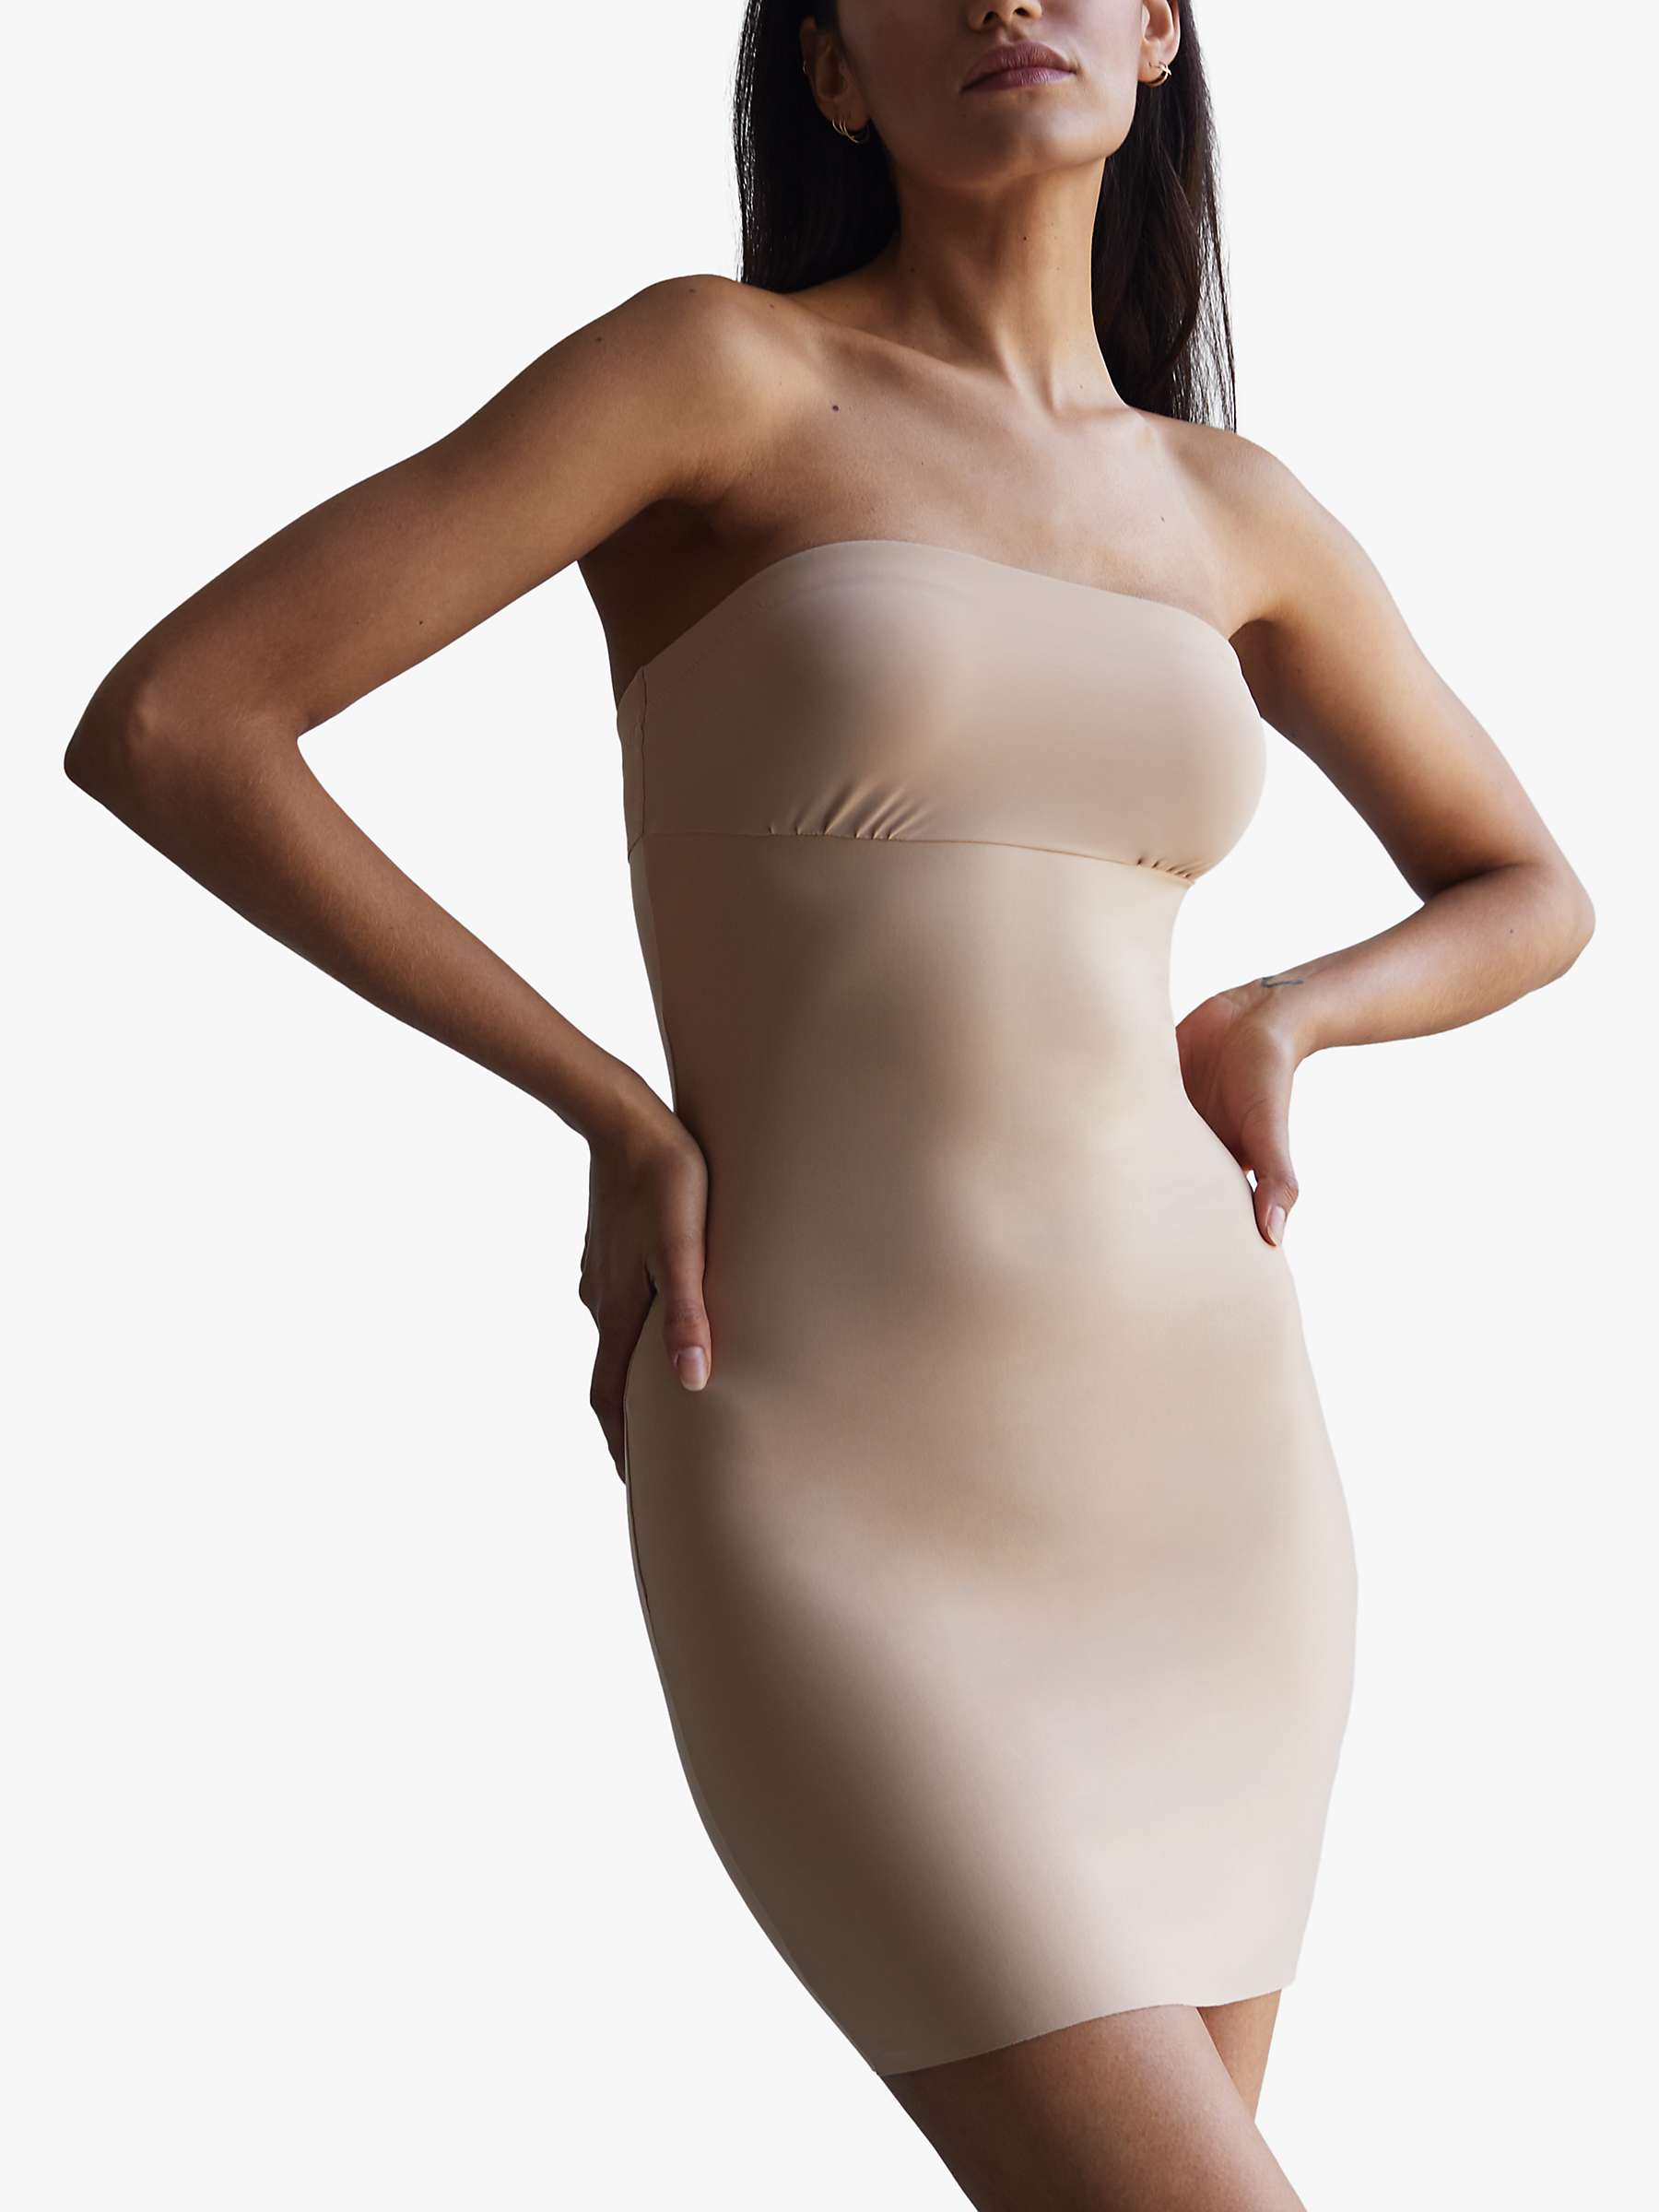 COMFREE Full Slips for Women Under Dresses Seamless Body